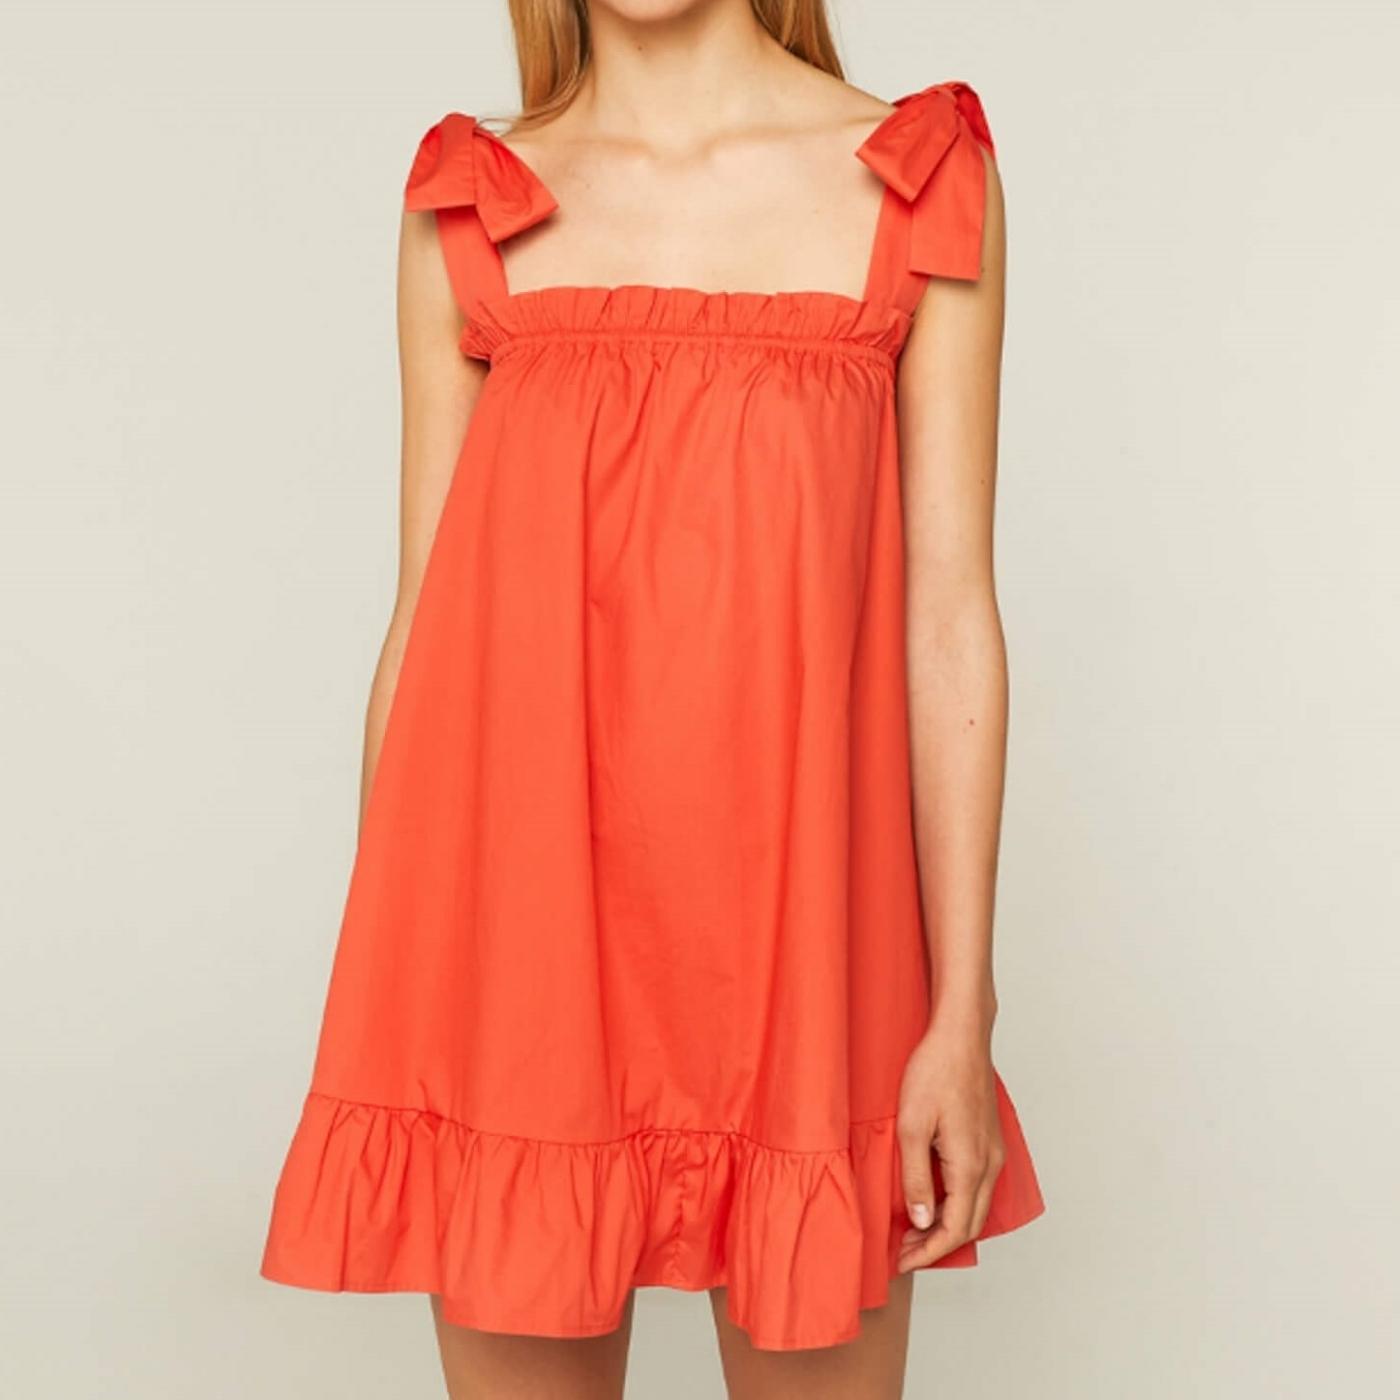 short-orange-strappy-cotton-dress.jpg